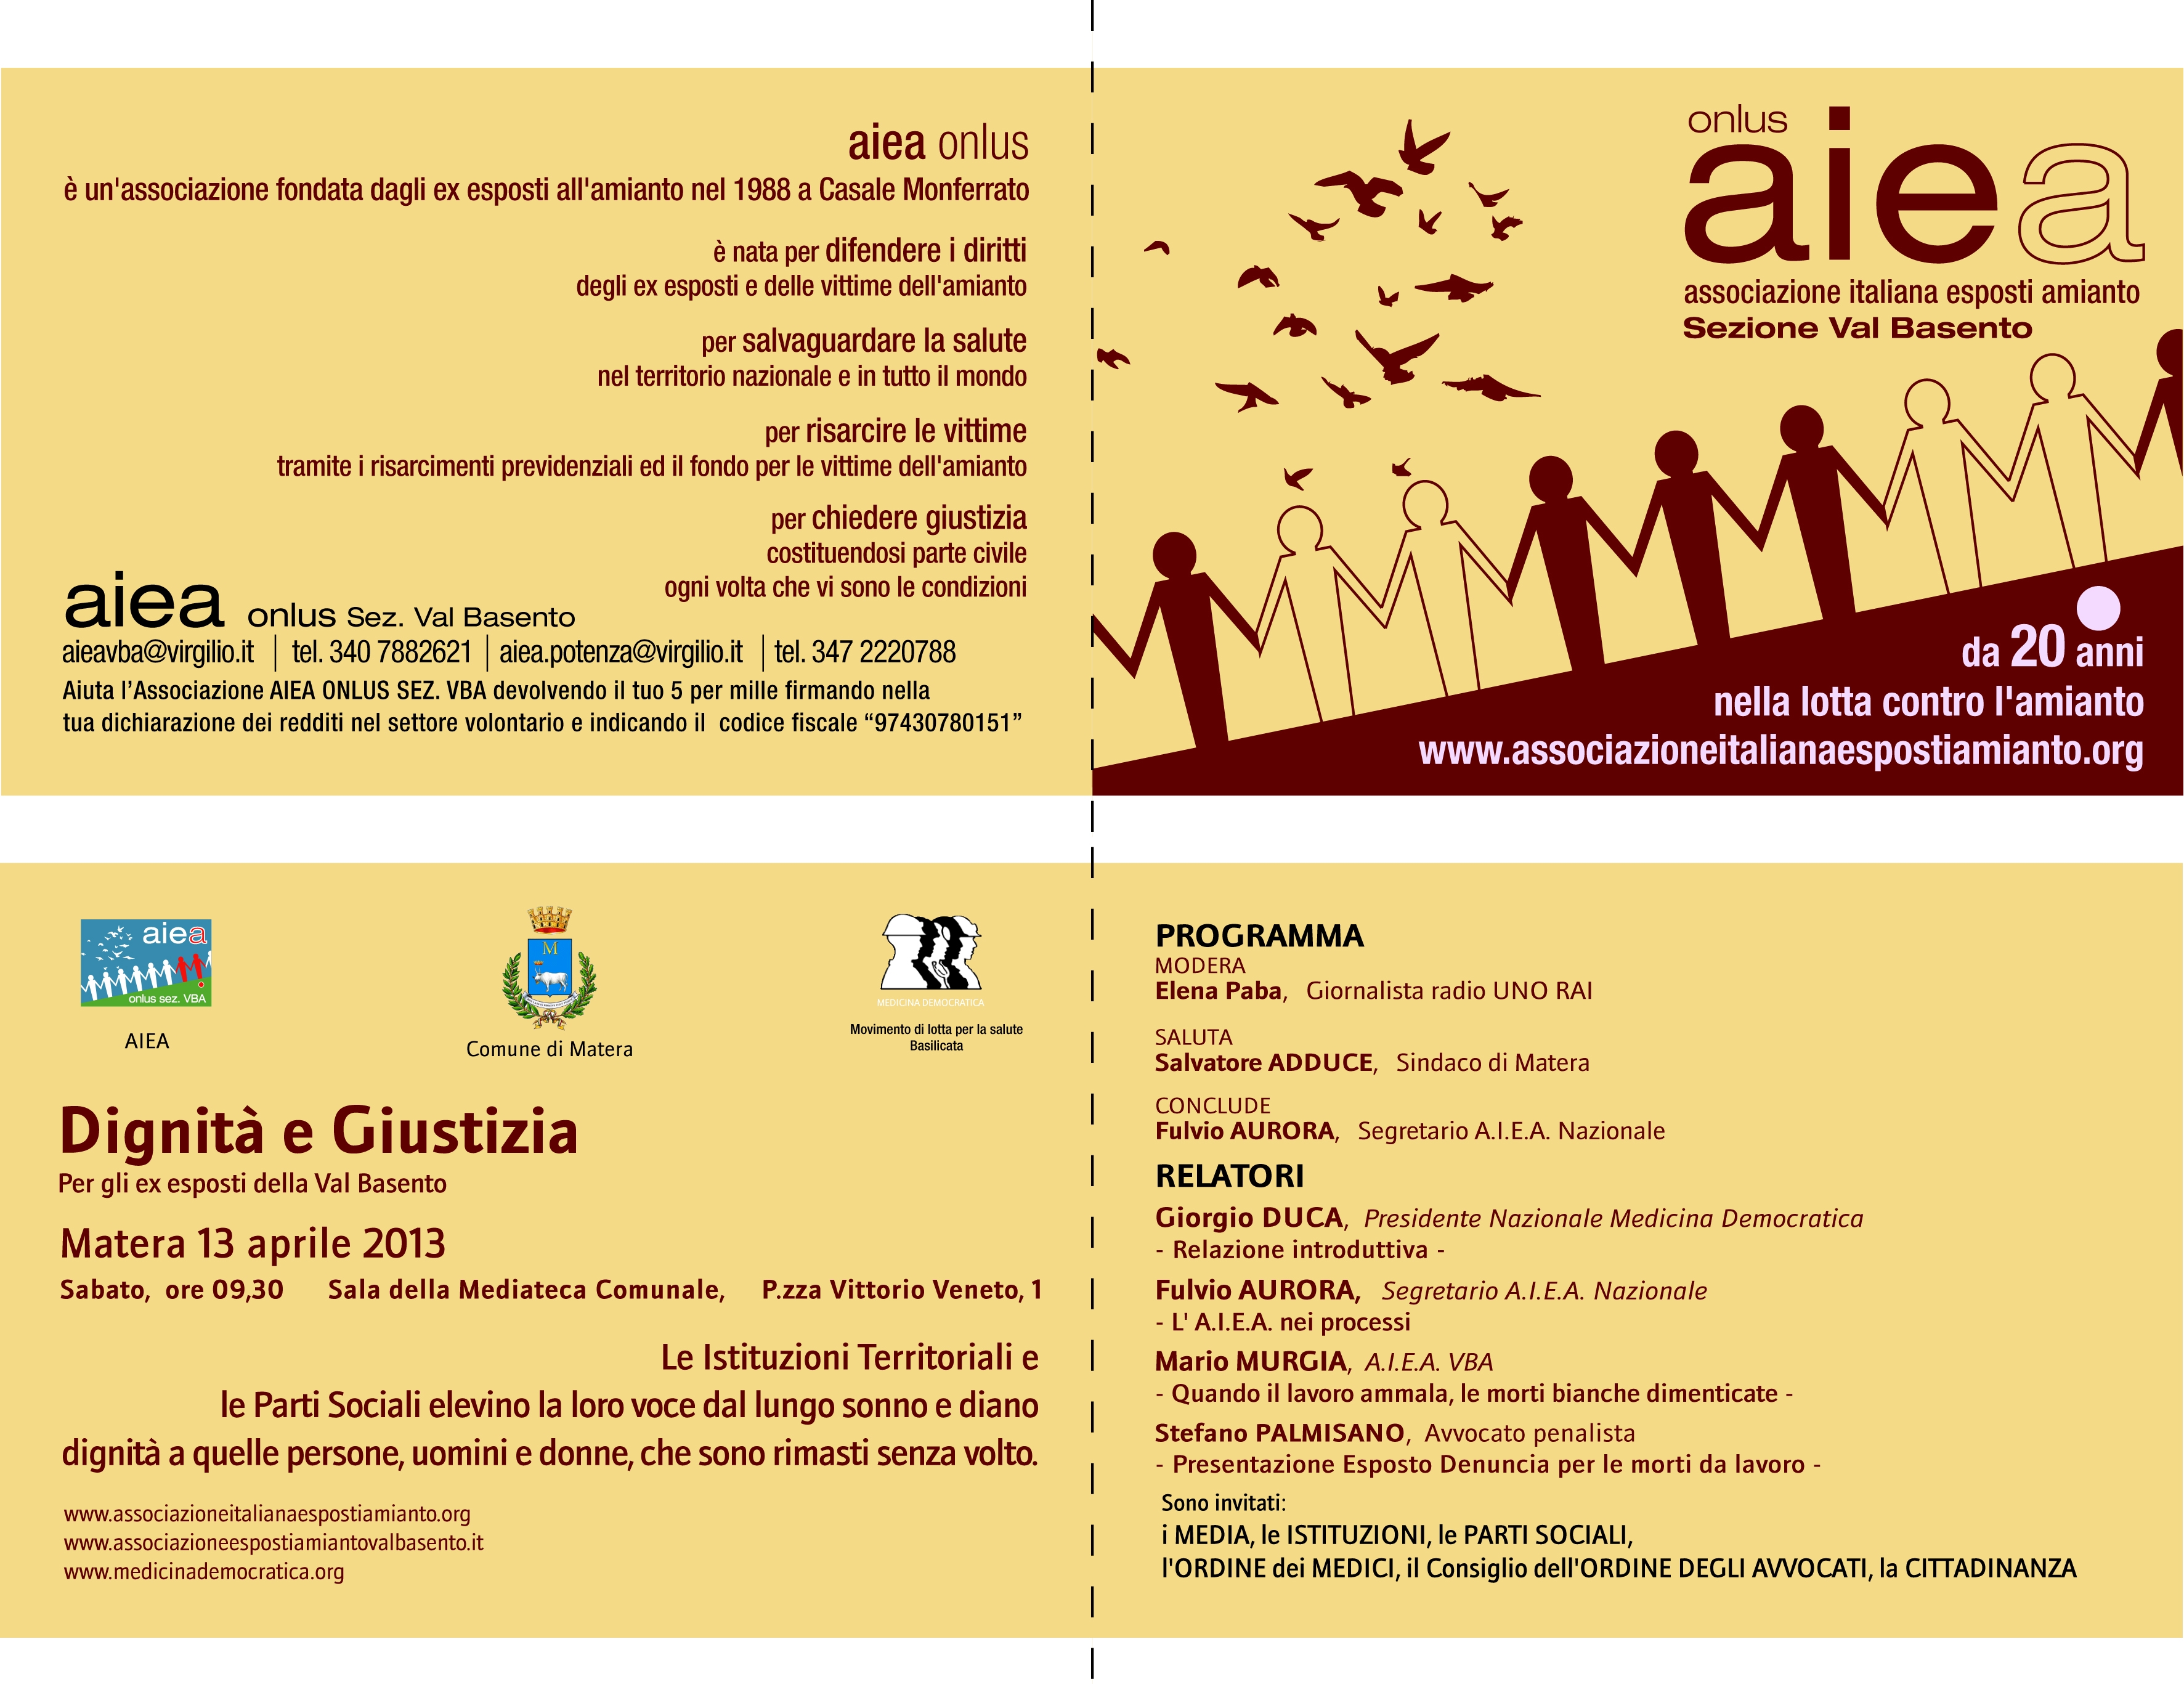 A Matera il 13 aprile l'Aiea Sezione Val Basento organizza un incontro intitolato 